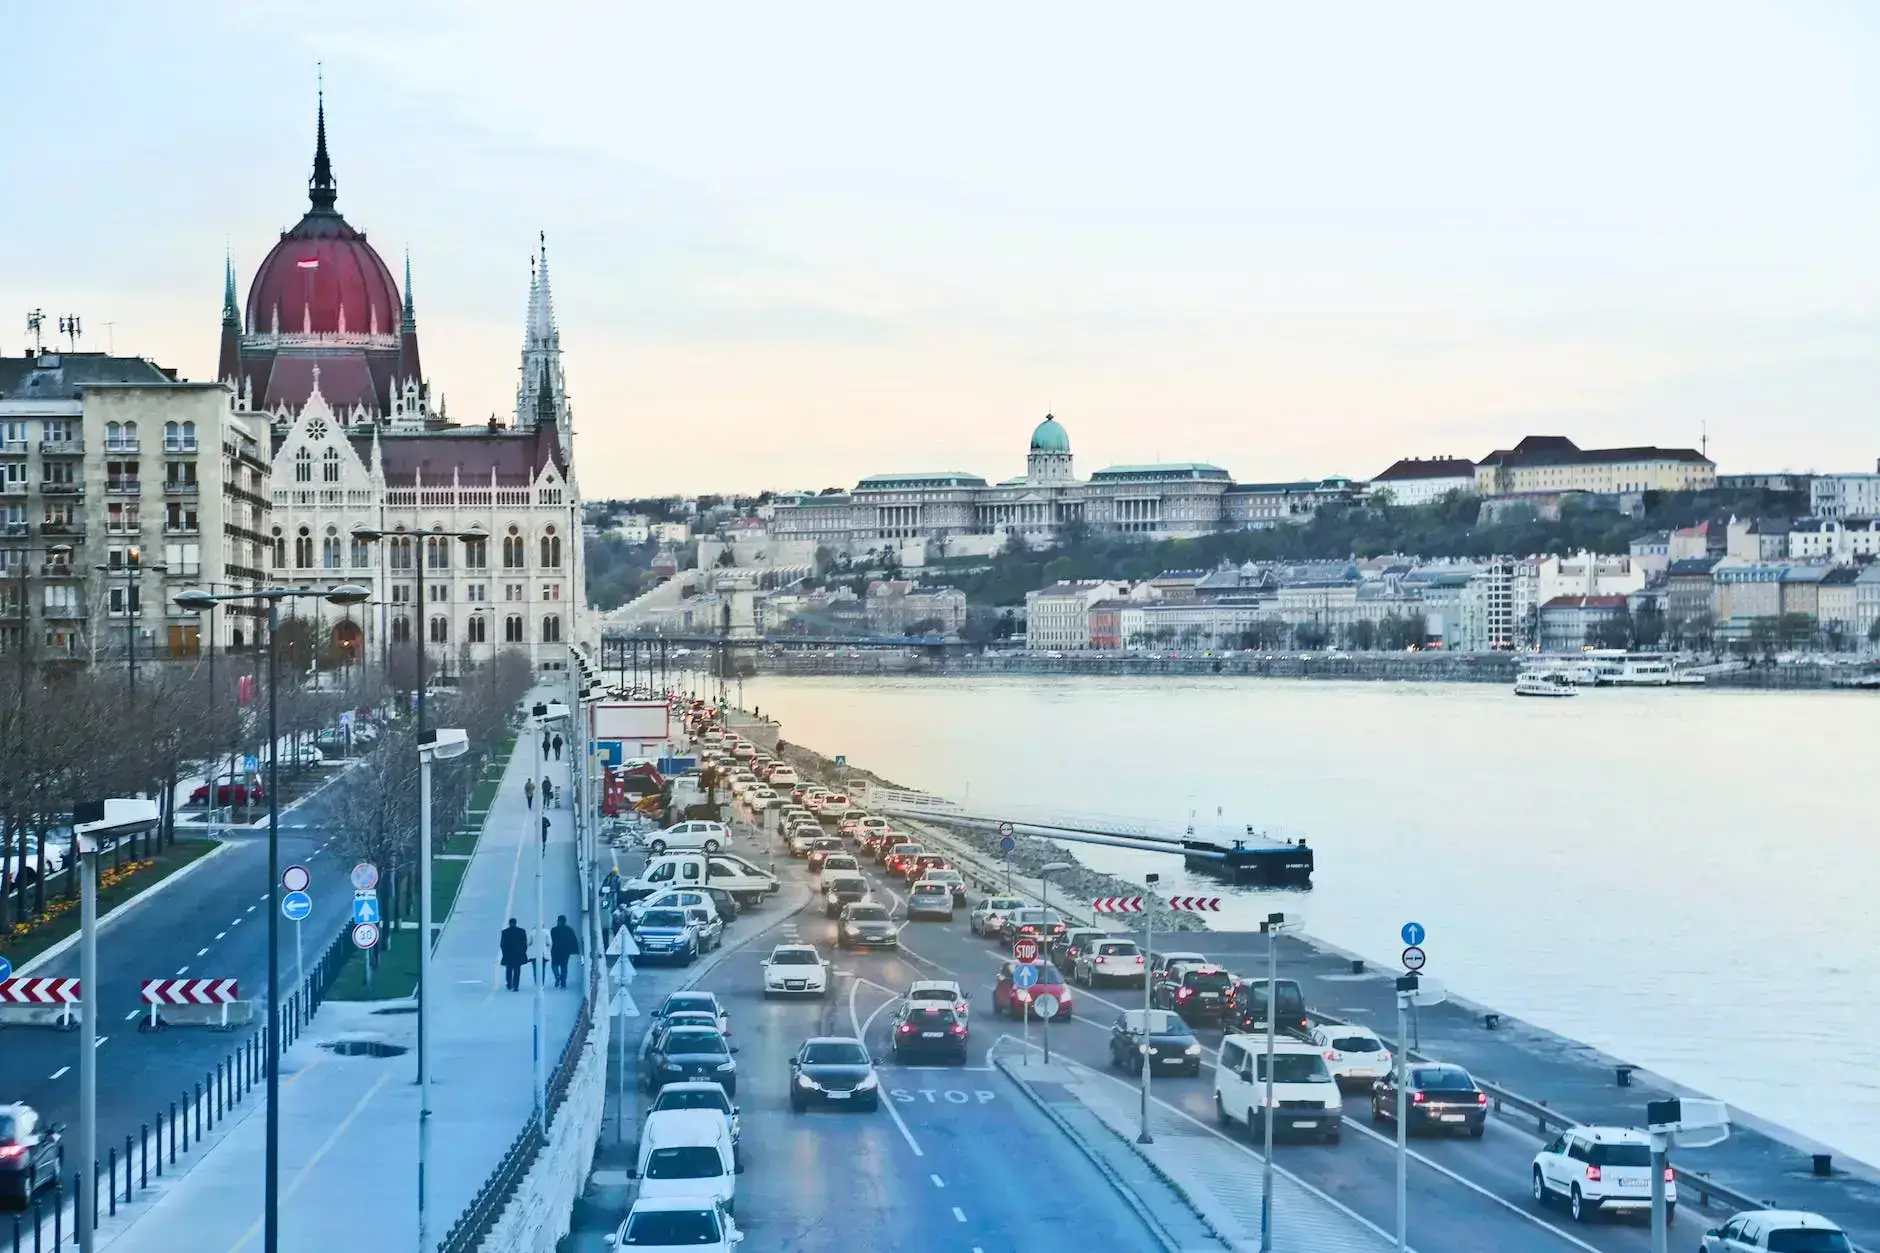 Maďarský diaľničná známka - Možnosti cestovania v Maďarsku po diaľnici